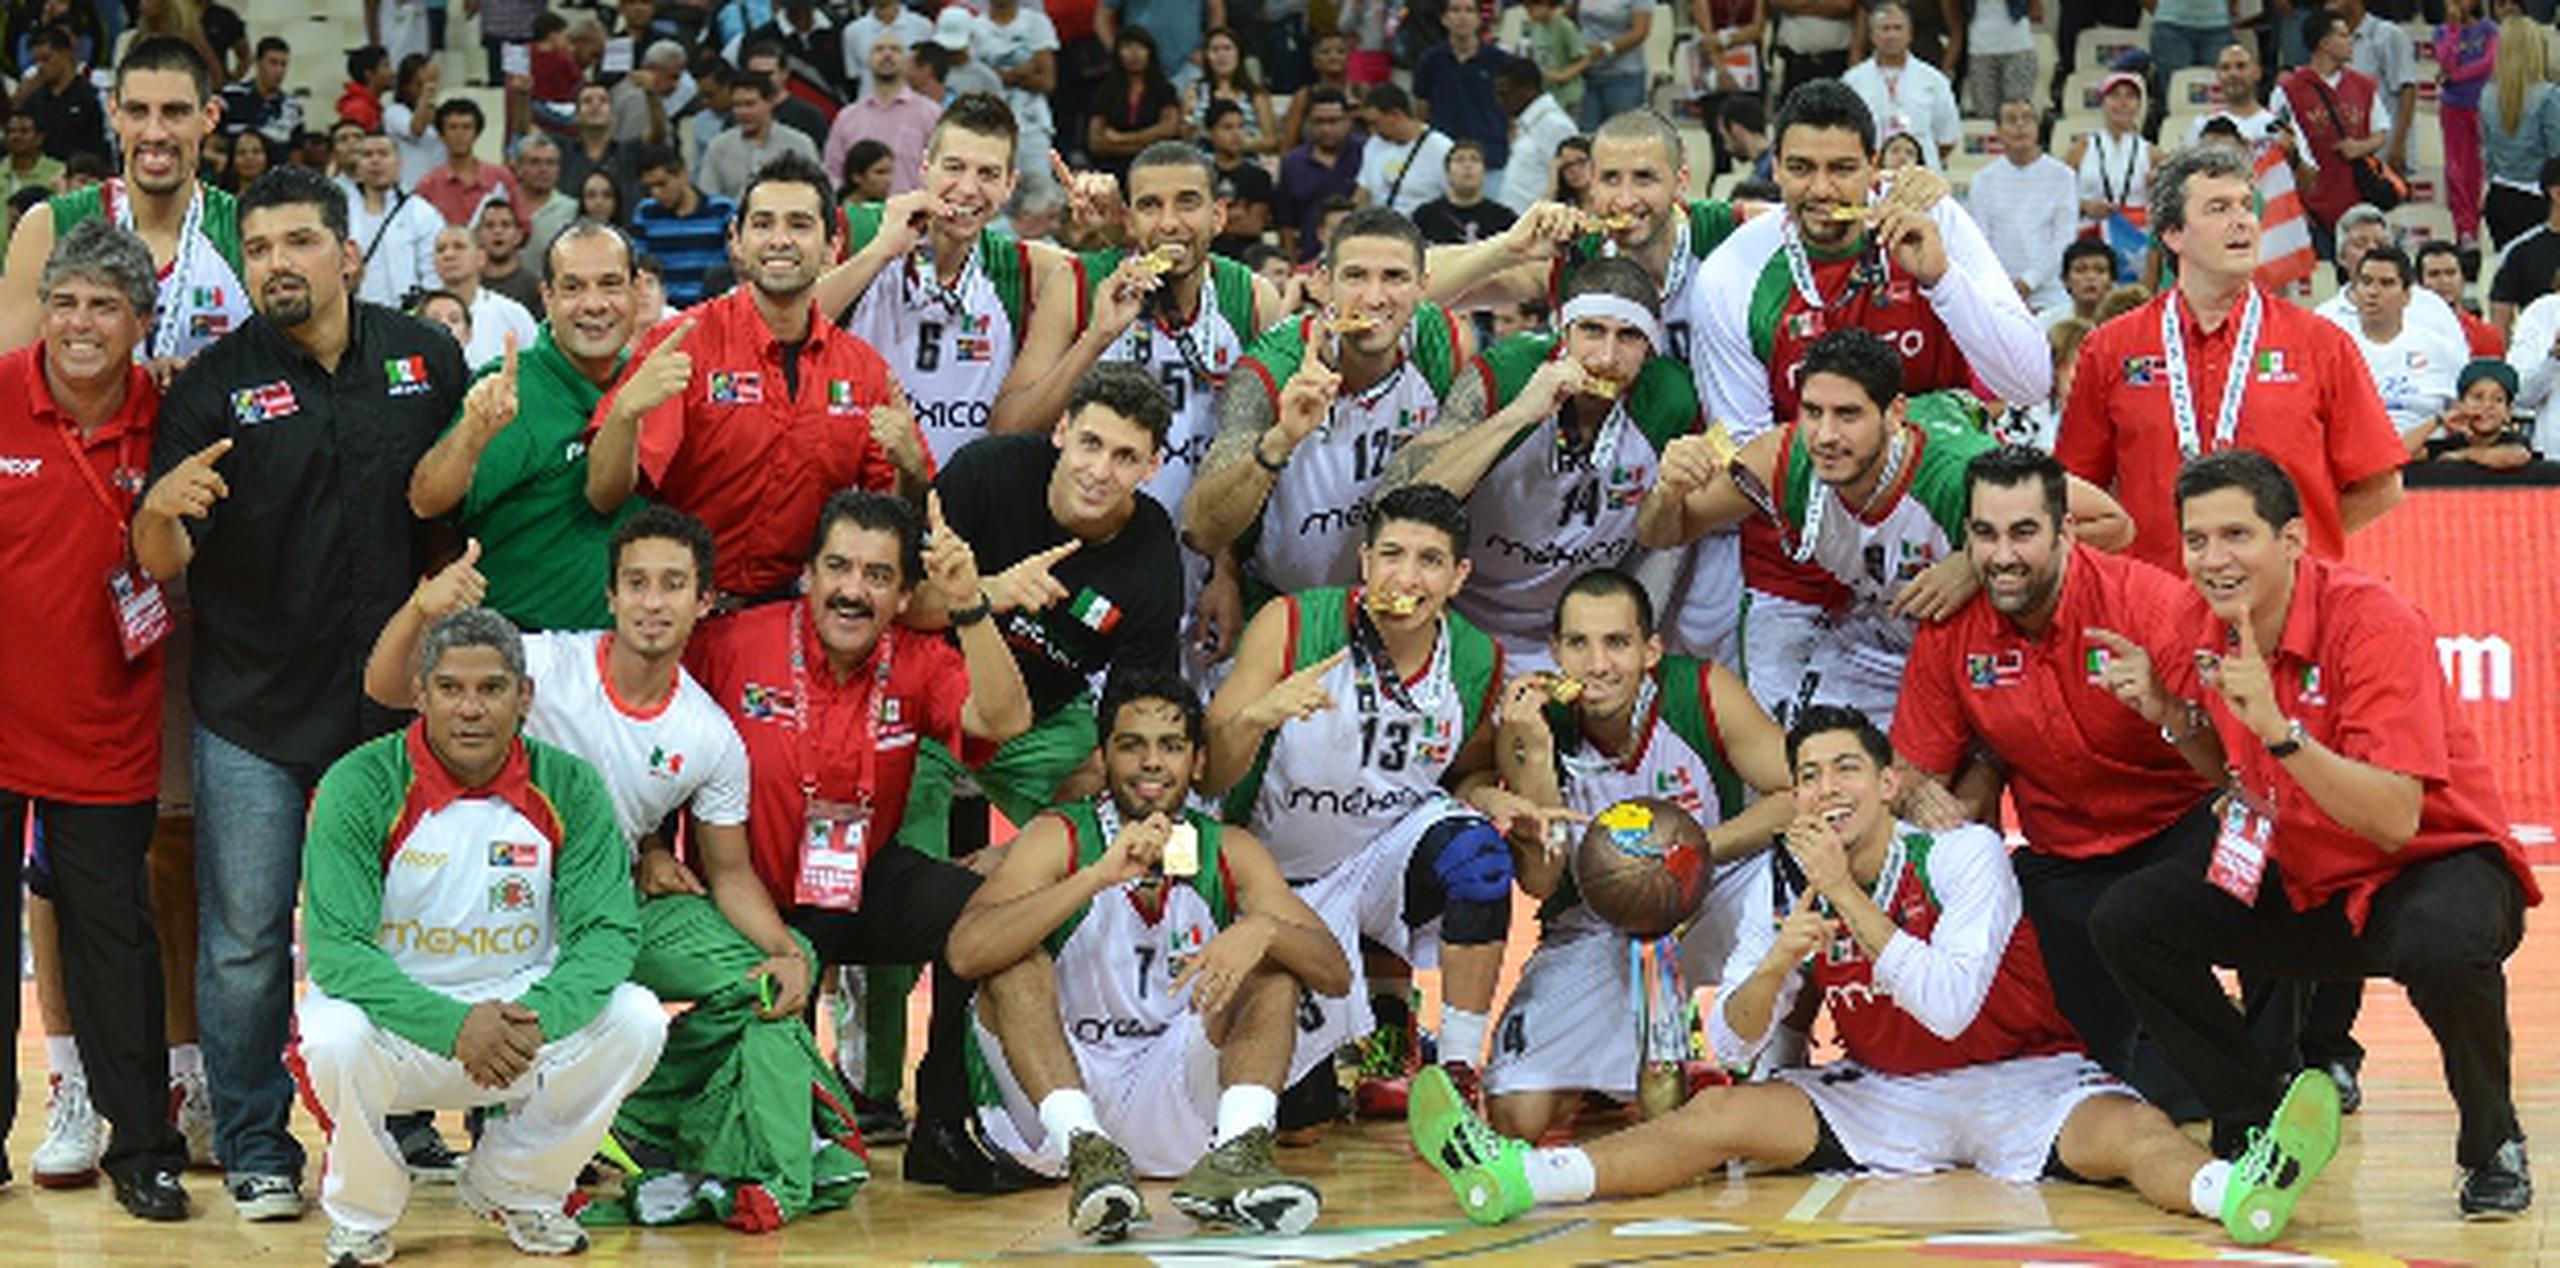 La selección nacional de México posa para fotos luego de recibir la medalla de oro del torneo Premundial en Caracas. (Enviado especial / andre.kang@gfrmedia.com)